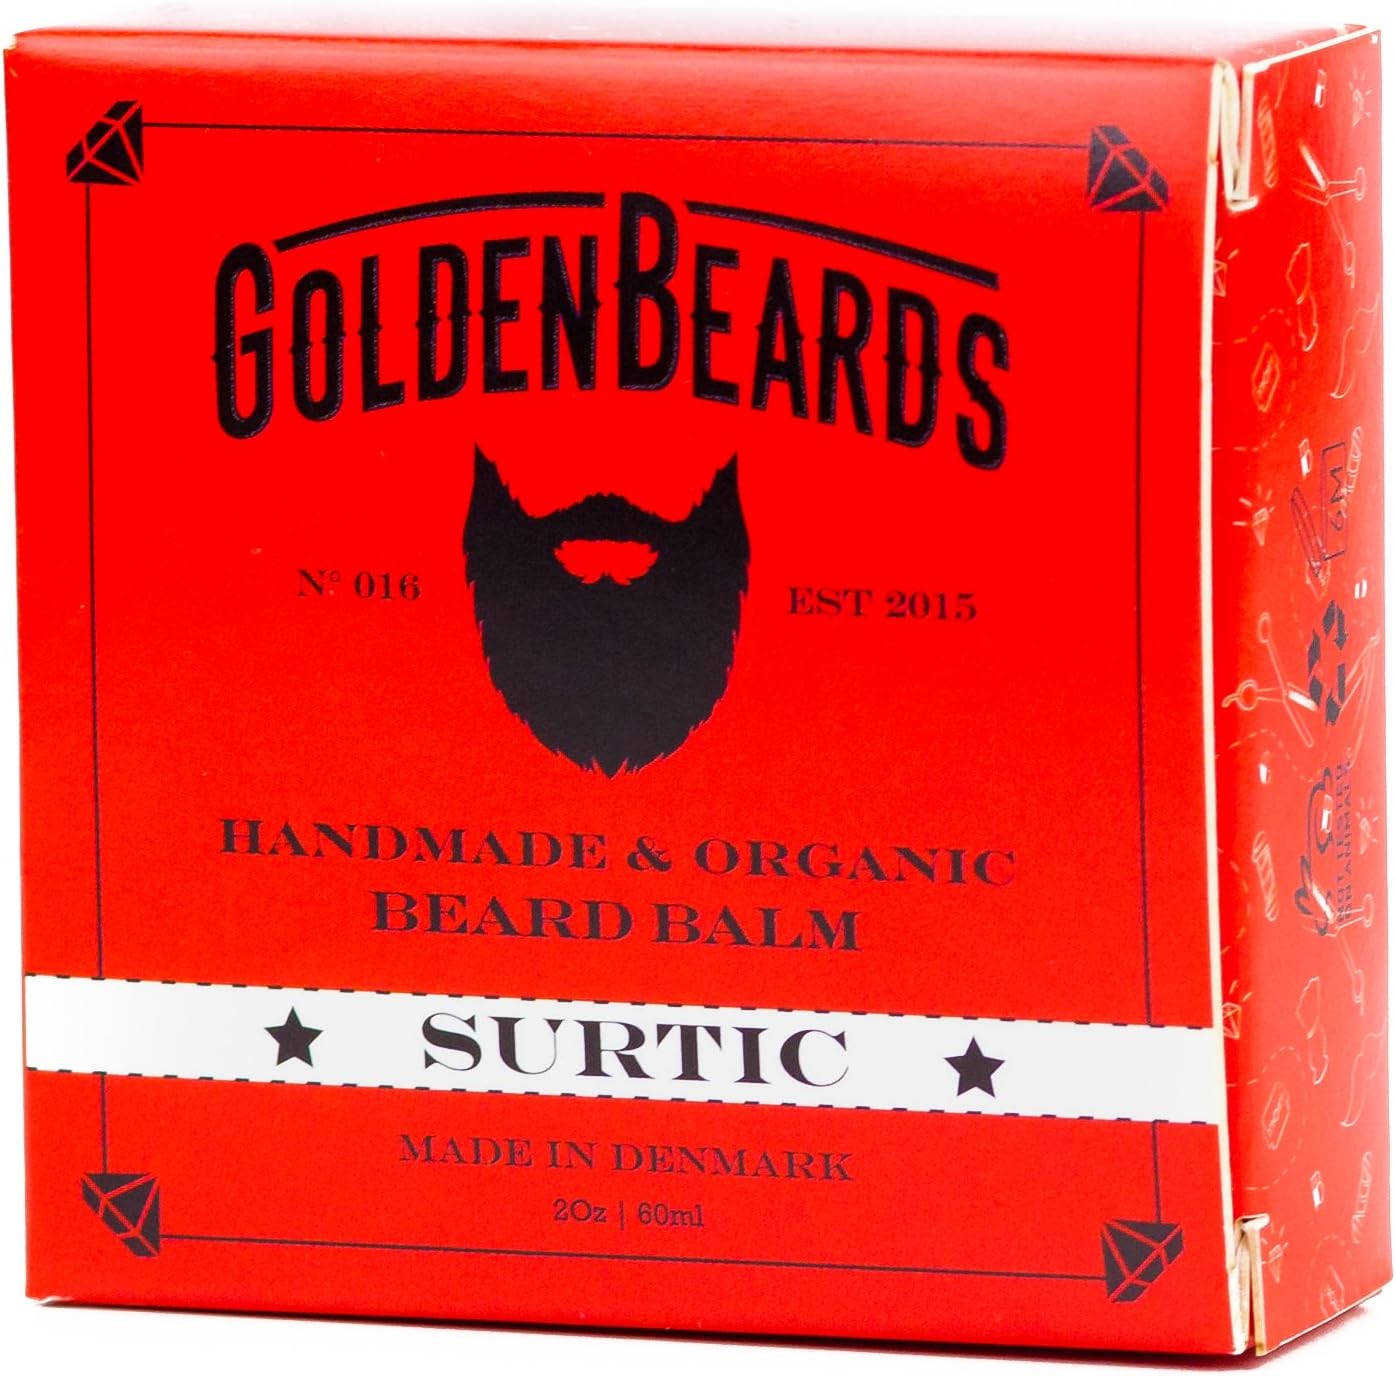 Golden Beards Bio Beard Balm – SU...